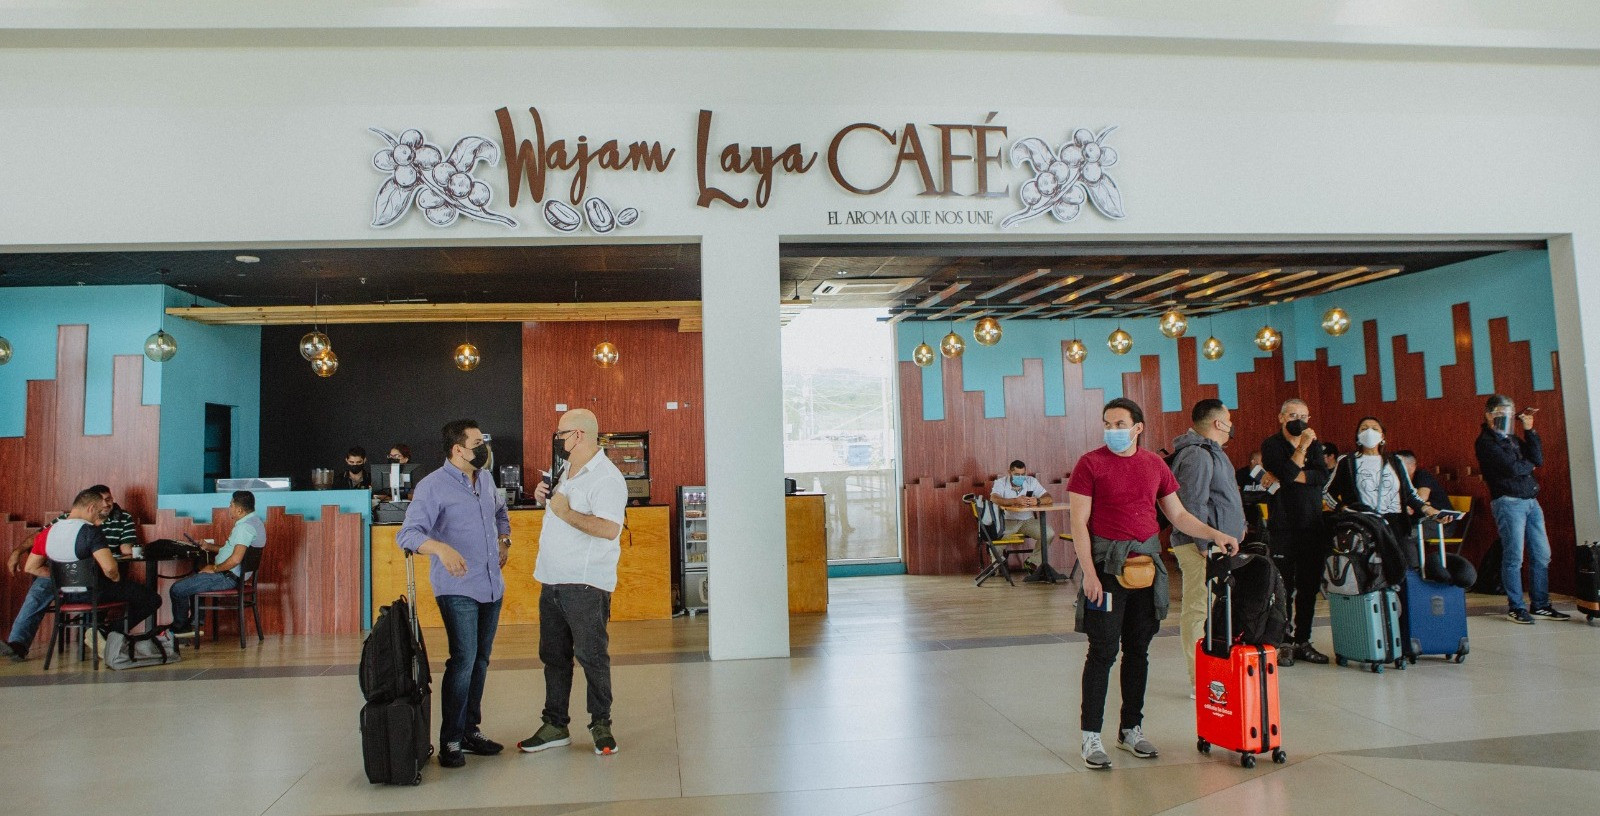 Servicios-Aeropuerto-Comayagua-Honduras-Palmerola-Wajam Laya Café, donde los aroma y el sabor se combinan para enamorar a los pasajeros